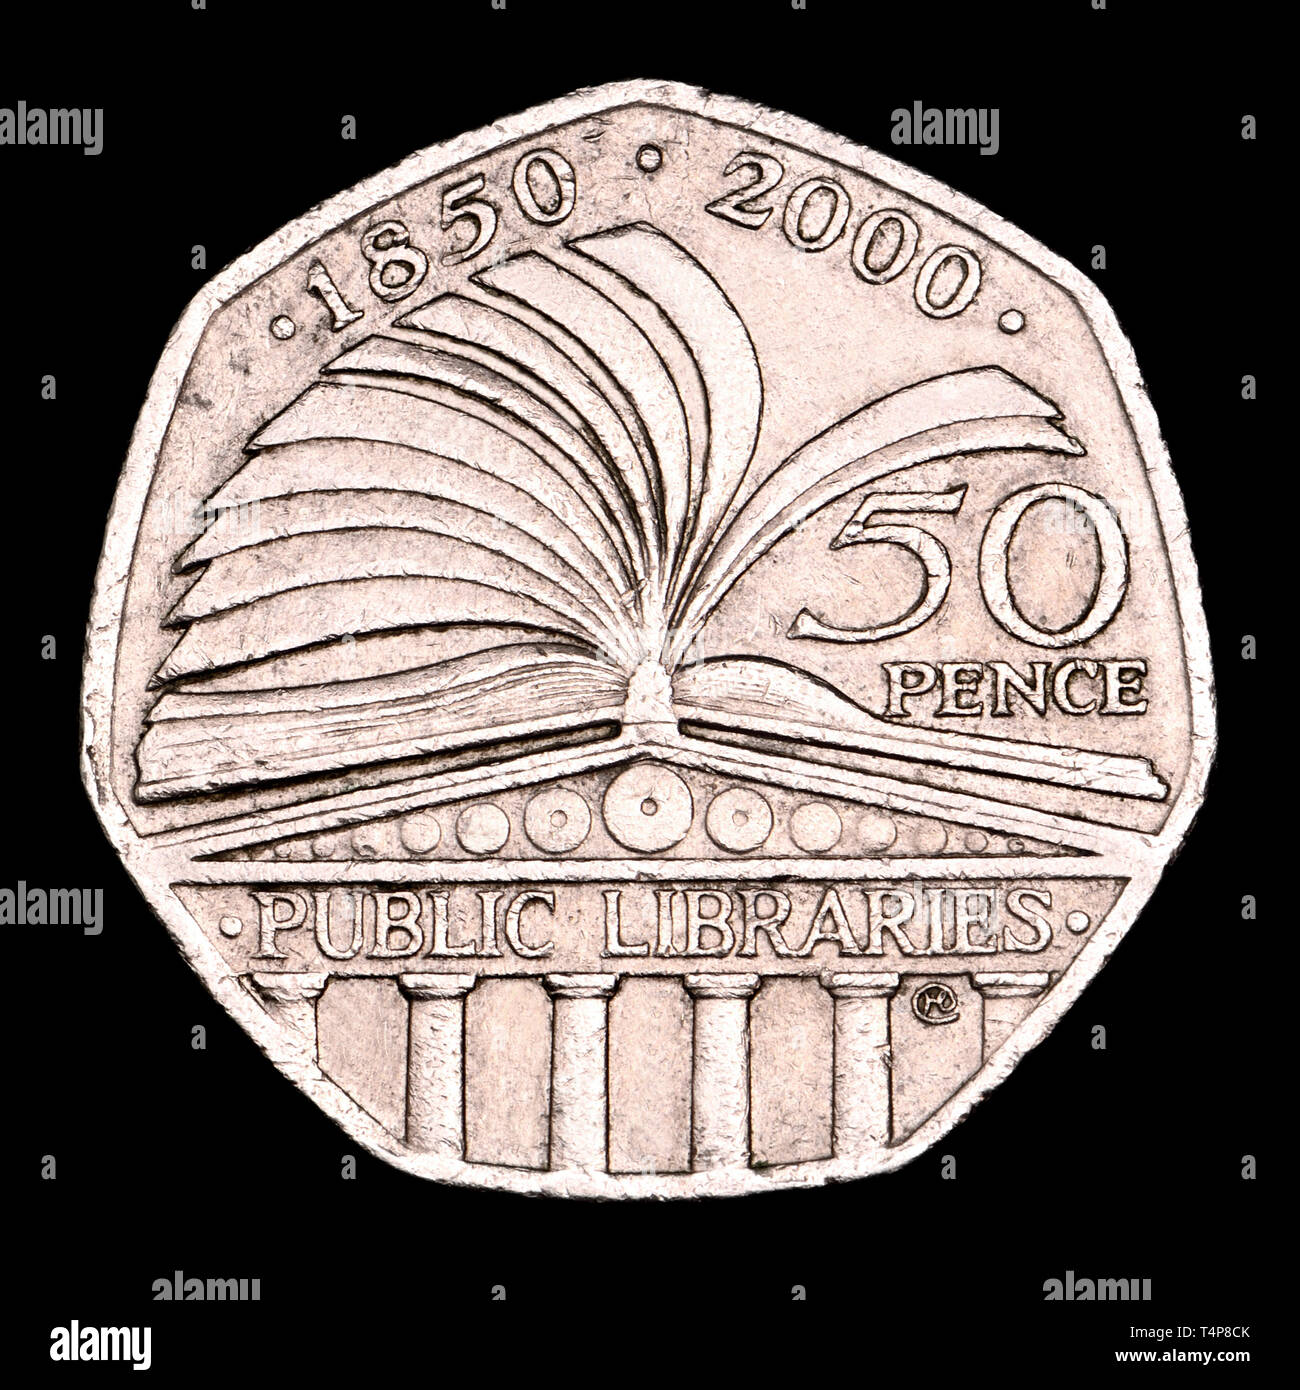 Británico 50p moneda conmemorativa. Las bibliotecas británicas - 2000 Foto de stock